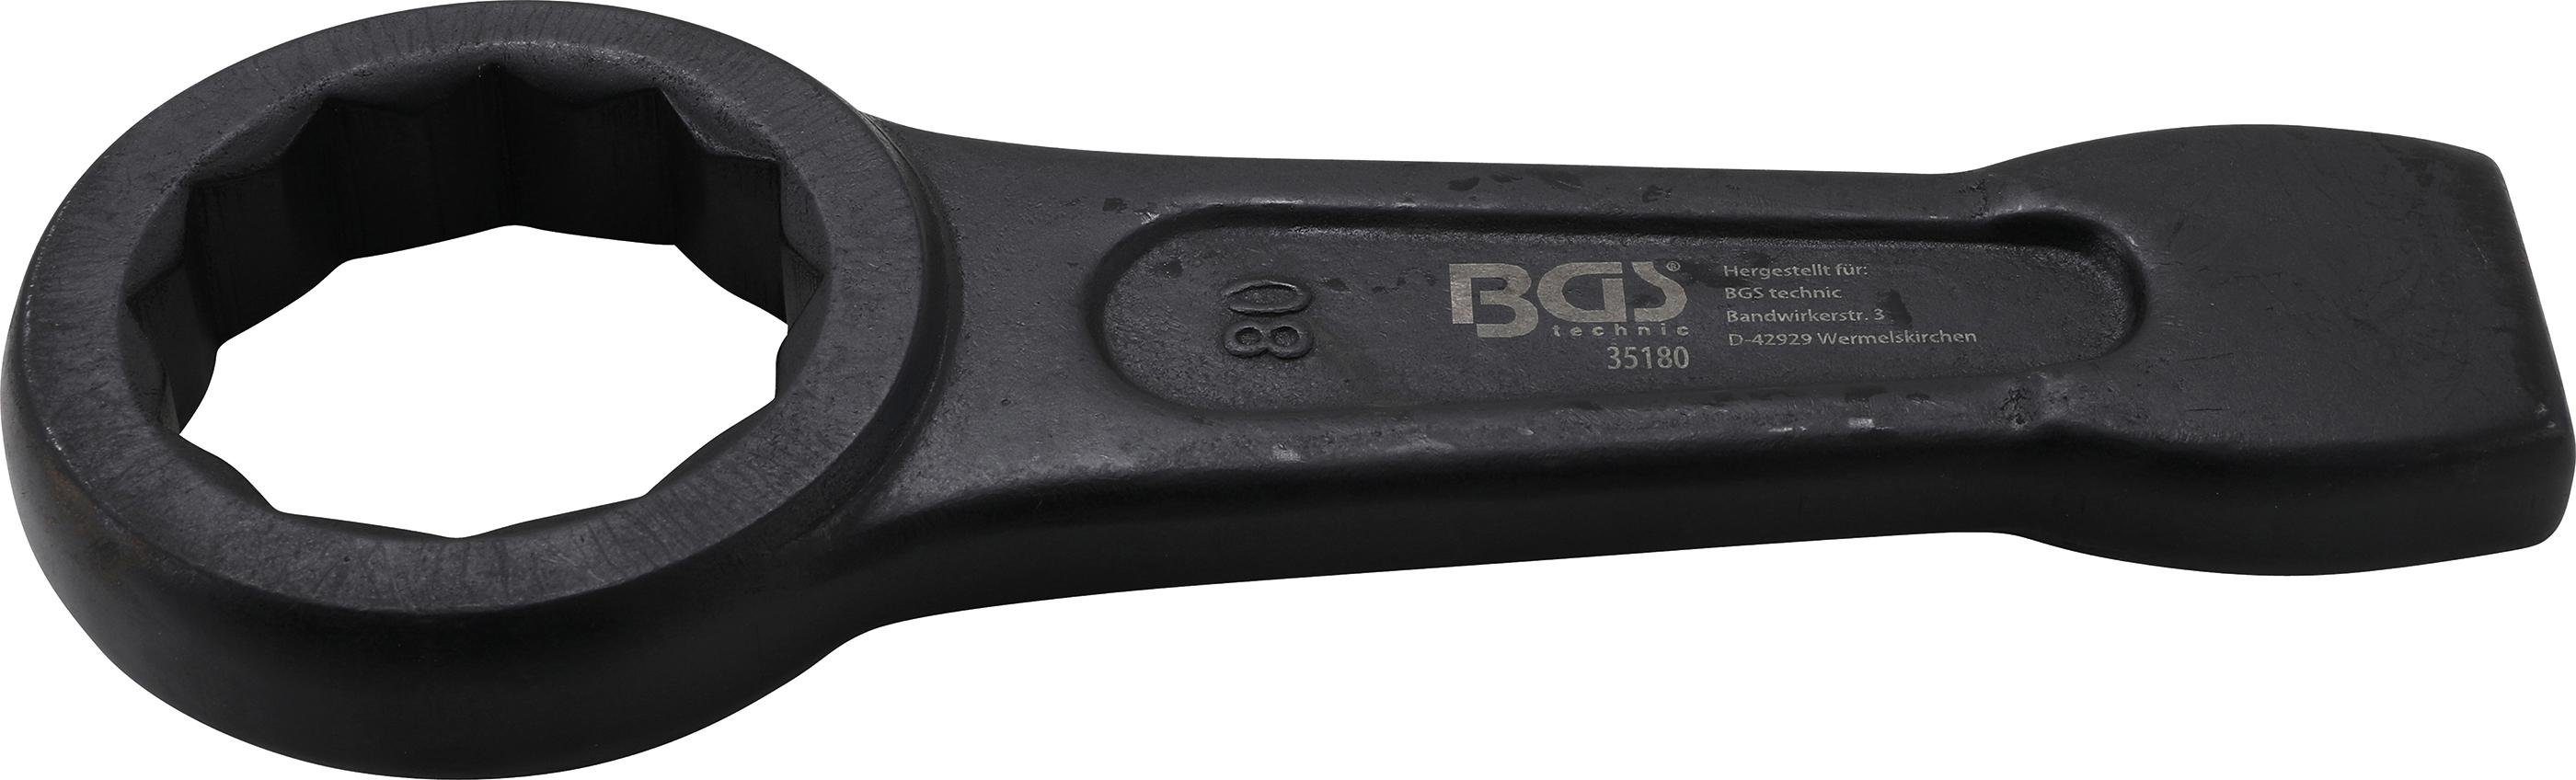 BGS technic Ringschlüssel Schlag-Ringschlüssel, SW 80 mm